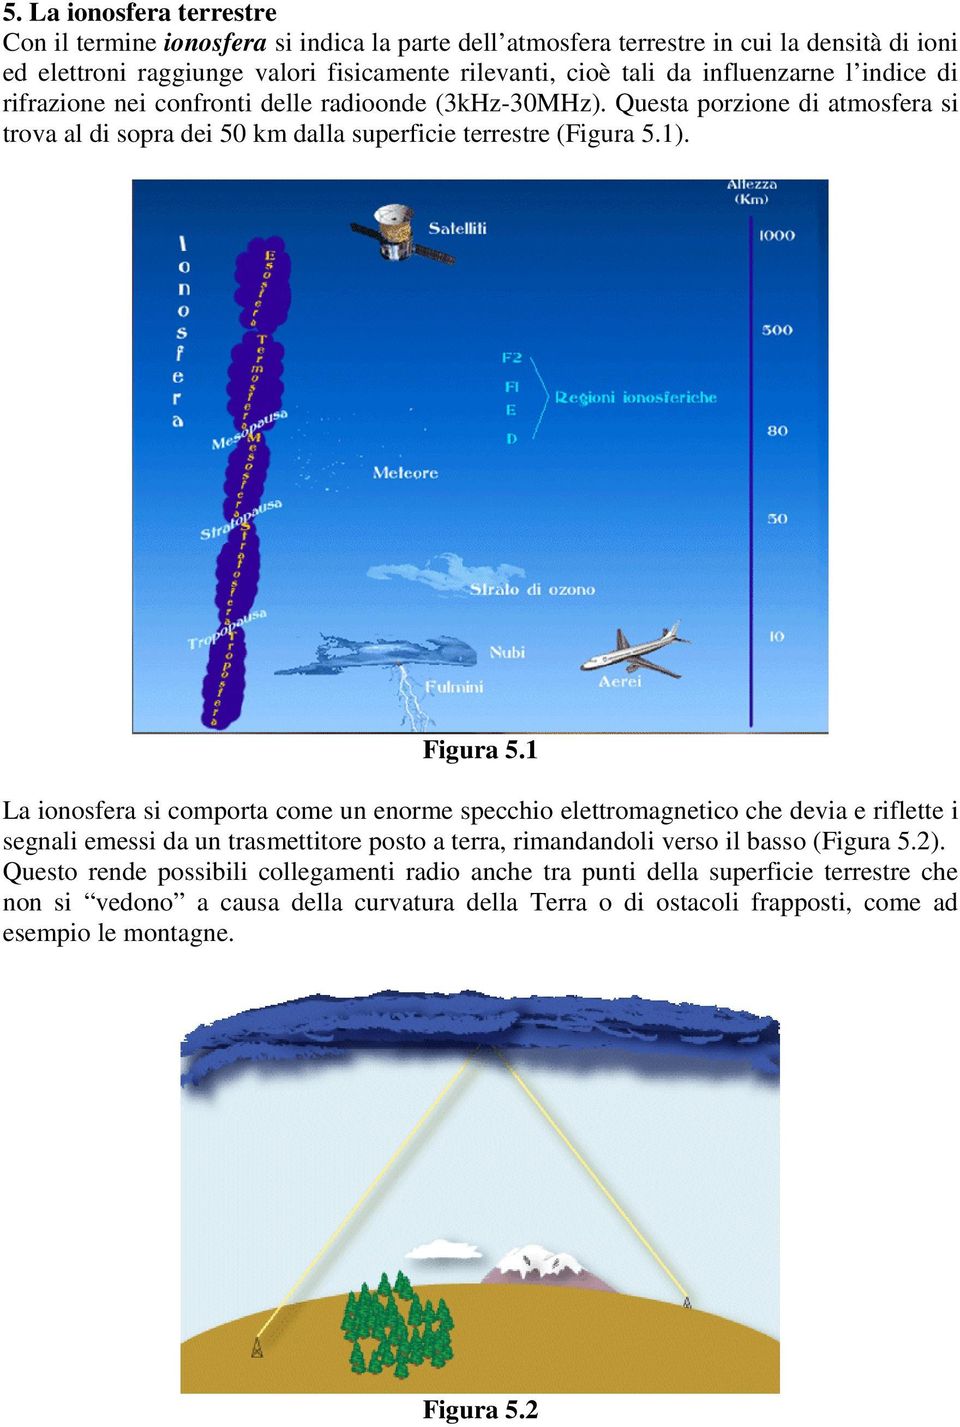 1 La ionosfera si comporta come un enorme specchio elettromagnetico che devia e riflette i segnali emessi da un trasmettitore posto a terra, rimandandoli verso il basso (Figura 5.2).